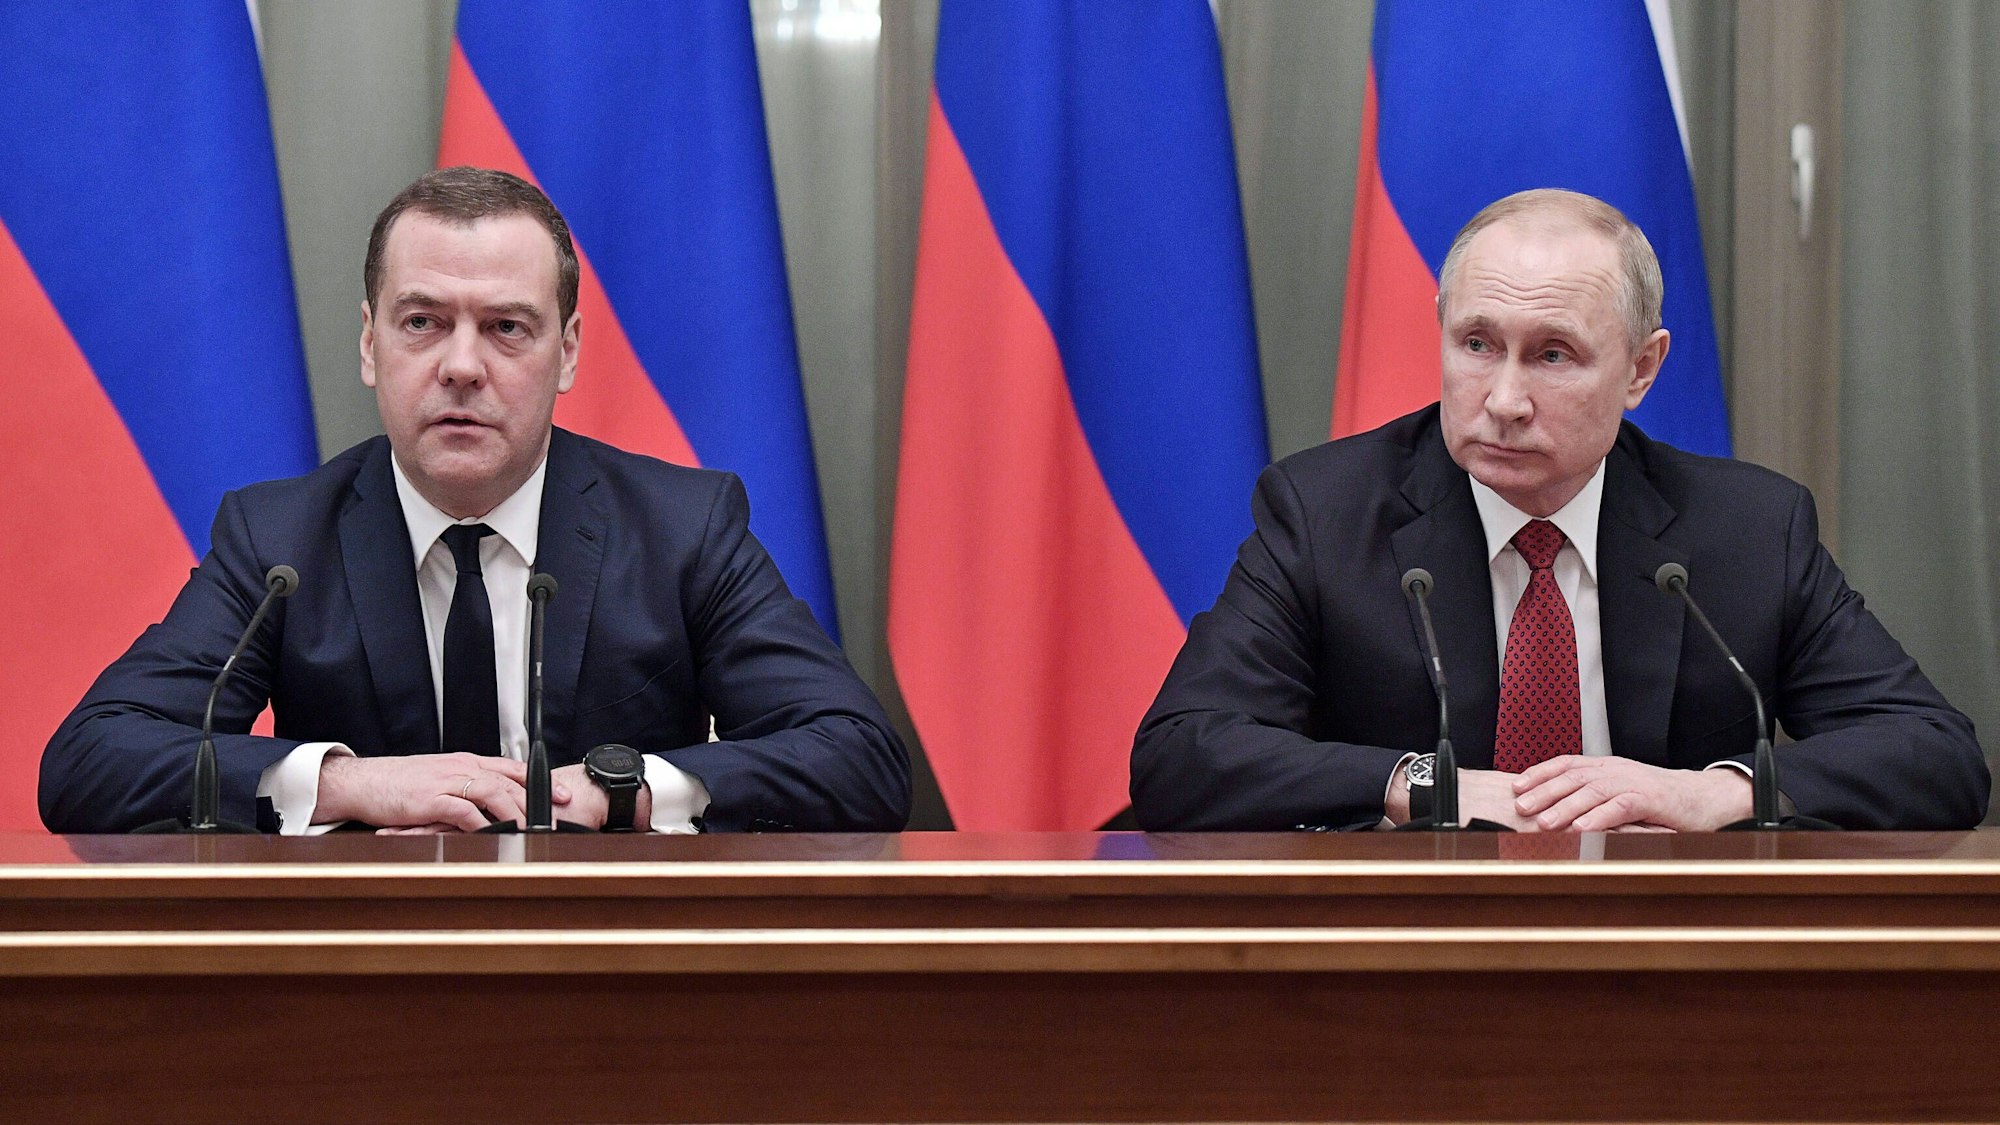 Der Vizechef des russischen Sicherheitsrats Dmitri Medwedew gilt als enger Vertrauter von Kremlchef Wladimir Putin. Nun hat Medwedew Polen mit einer „direkten Konfrontation“ gedroht. (Archivbild)